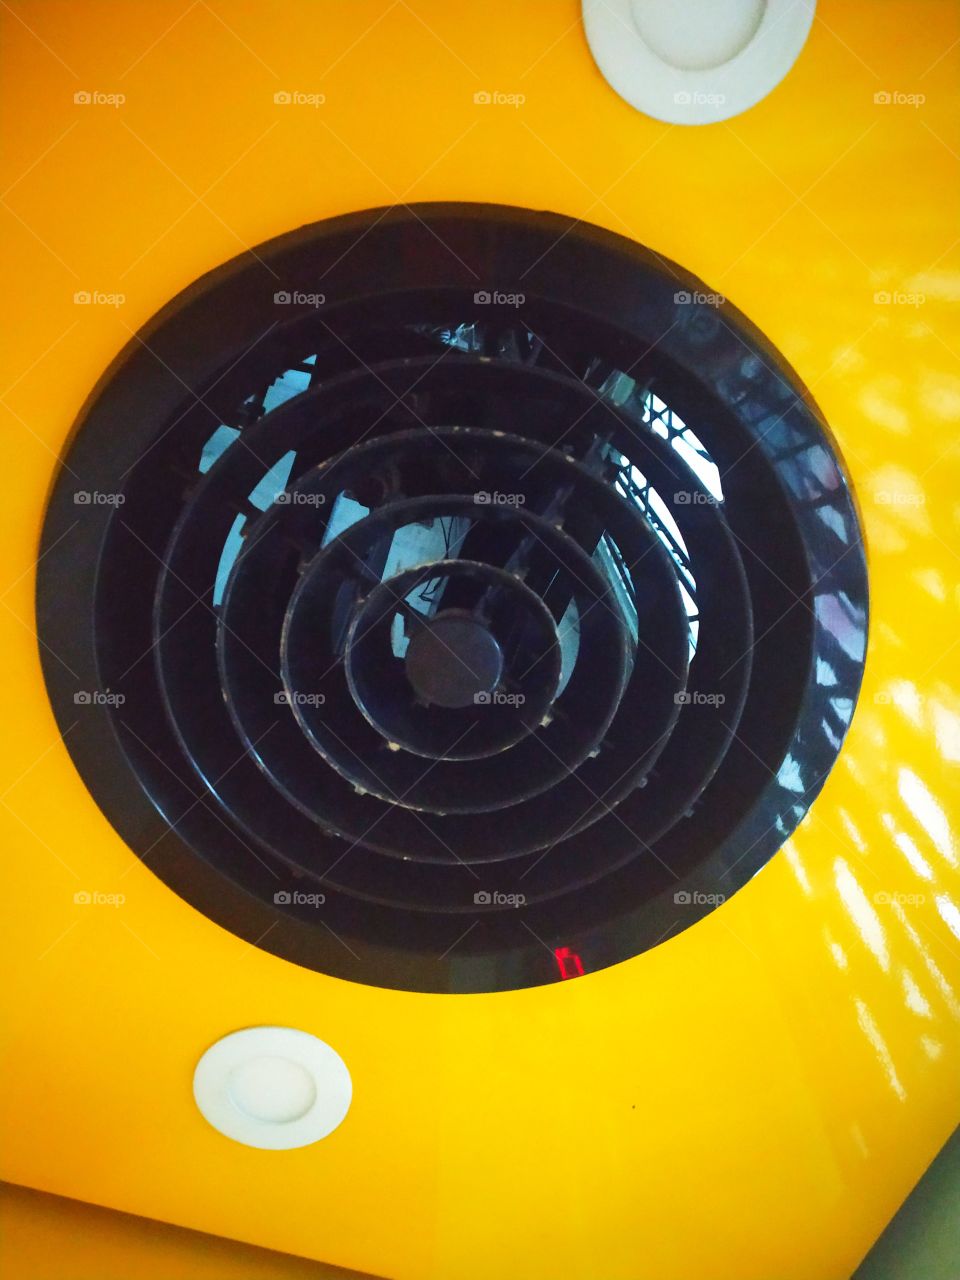 Round Fan in lift